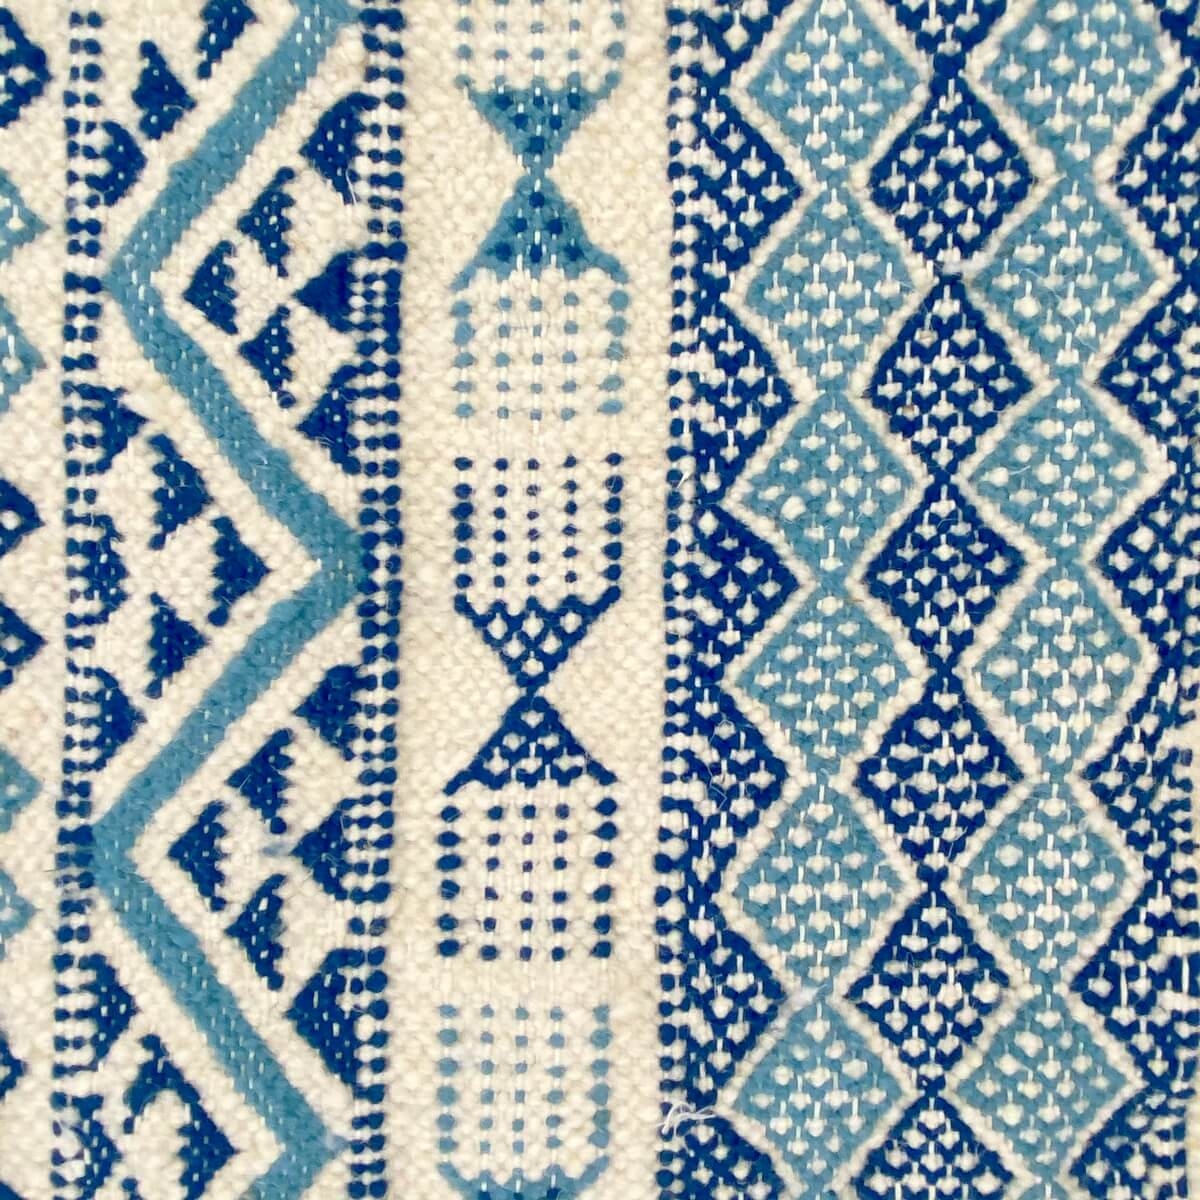 Berber tapijt Tapijt Margoum Ghassa 125x195 Blauw/Wit (Handgeweven, Wol, Tunesië) Tunesisch Margoum Tapijt uit de stad Kairouan.